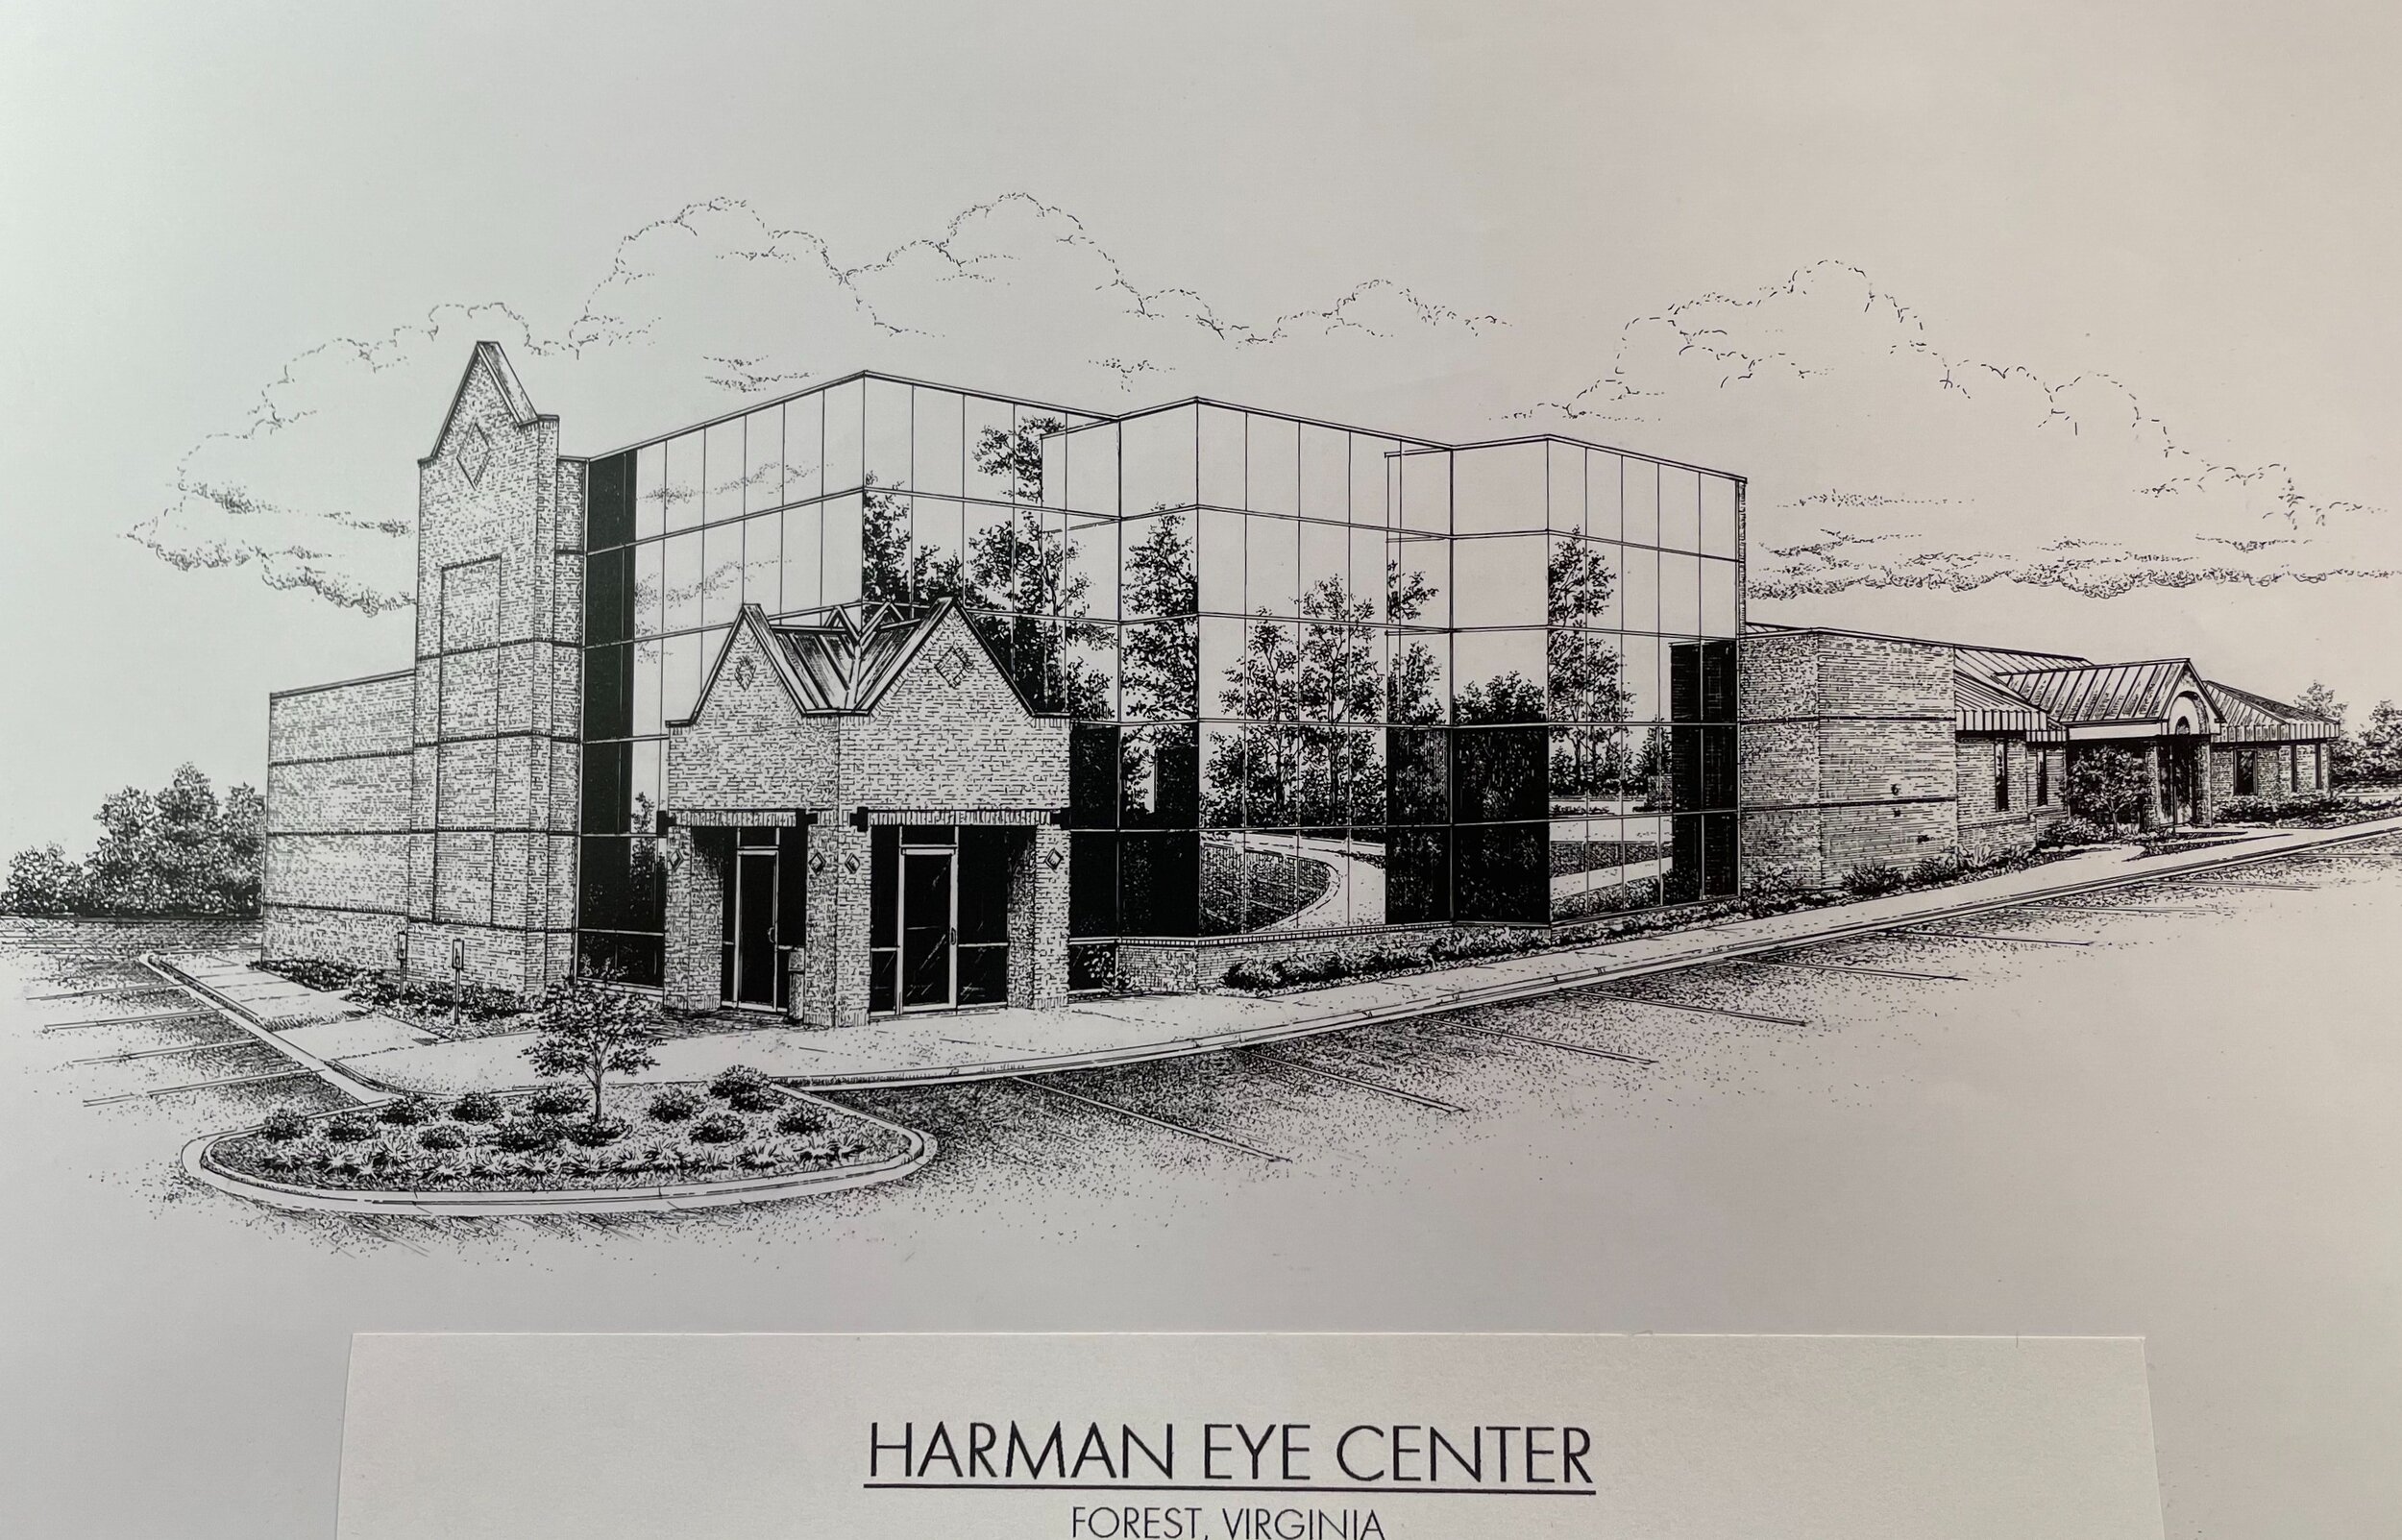 Harman Eye Center